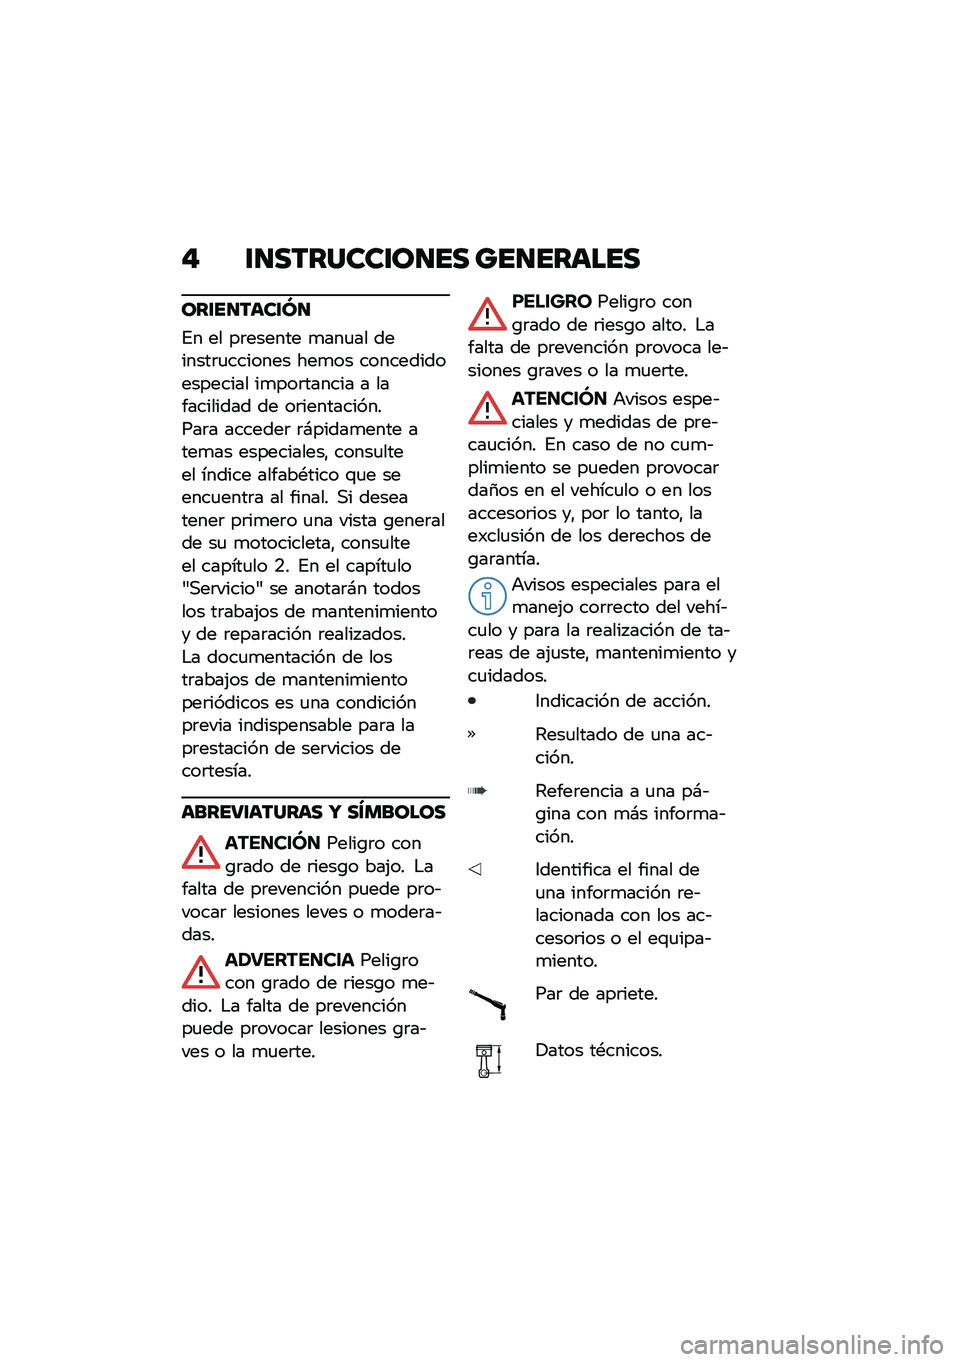 BMW MOTORRAD M 1000 RR 2021  Manual de instrucciones (in Spanish) �" �\f�
�������\f��
�� ���
������
���\f��
����\f�O�
�%� �� ��	������ �
���
�� �������	�
������� ���
�� ����������������� ��
��